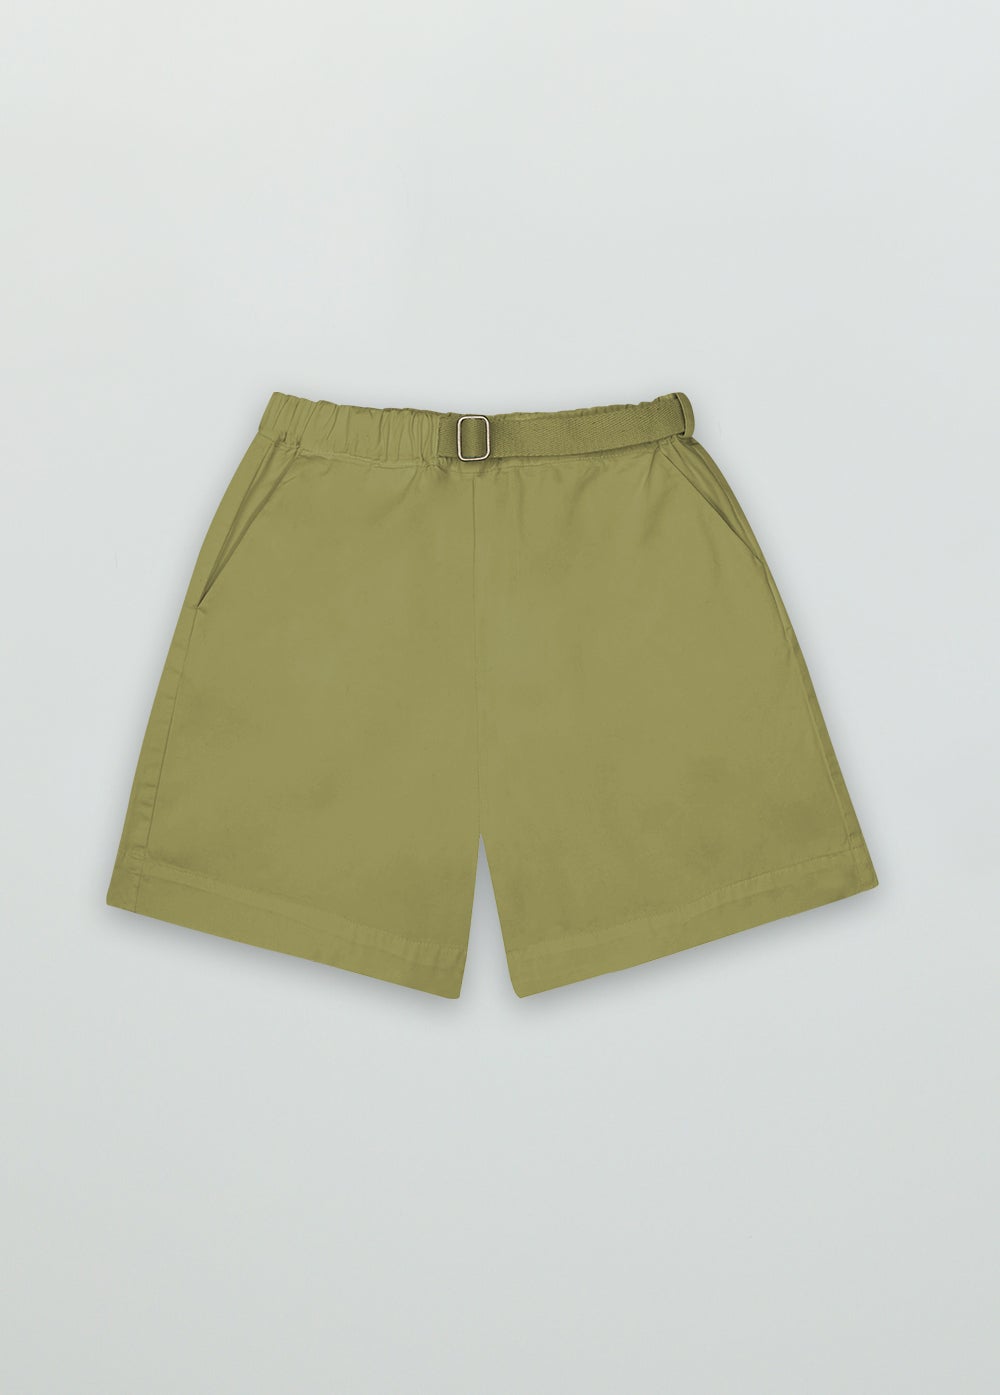 Daniel Bermuda Leaf Green Shorts The New Society 